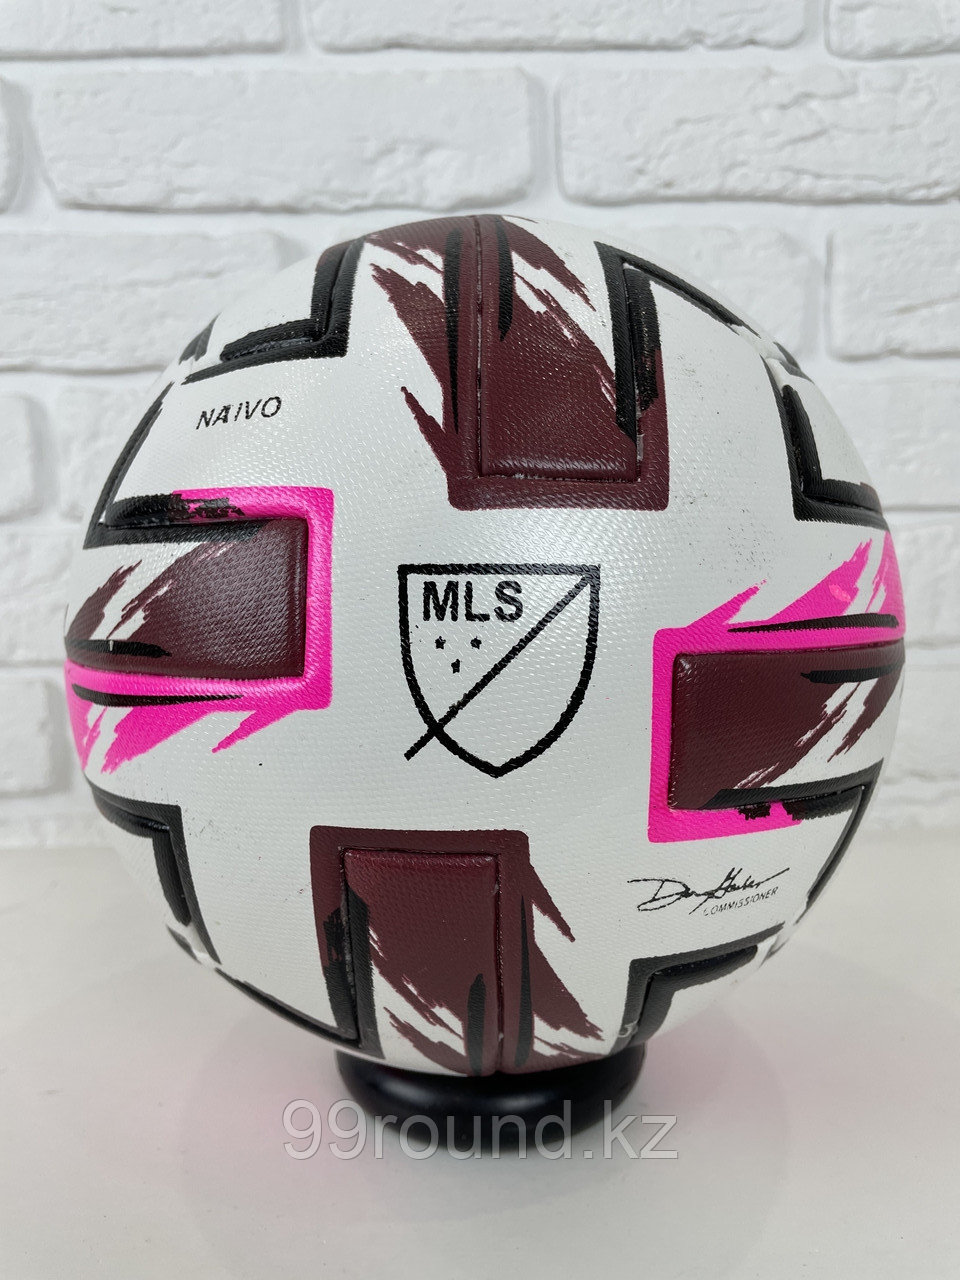 Футбольный мяч Adidas MLS